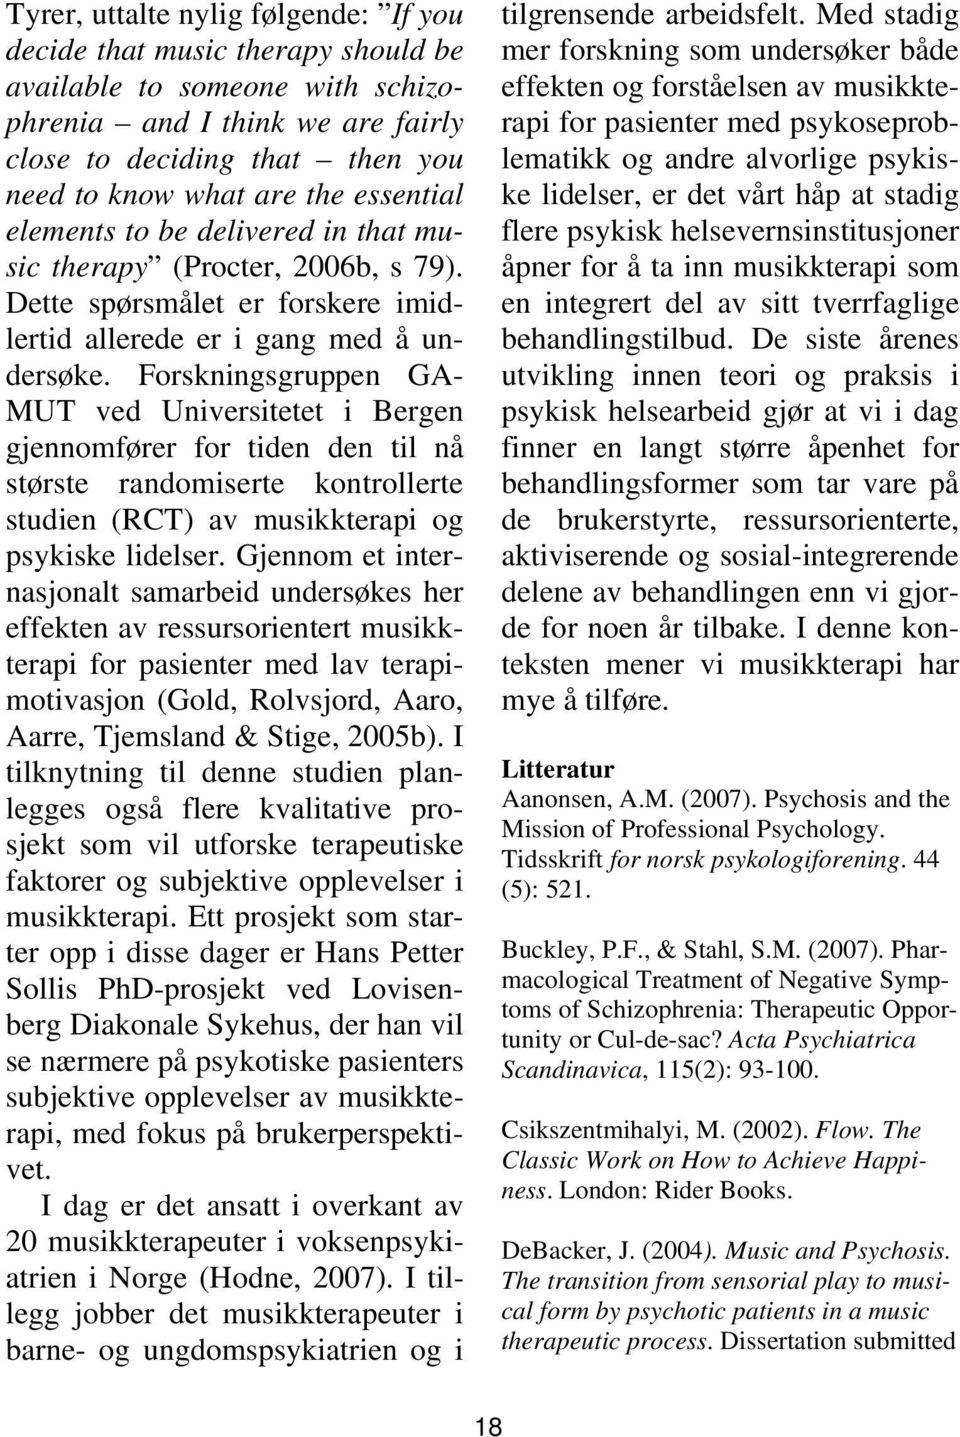 Forskningsgruppen GA- MUT ved Universitetet i Bergen gjennomfører for tiden den til nå største randomiserte kontrollerte studien (RCT) av musikkterapi og psykiske lidelser.